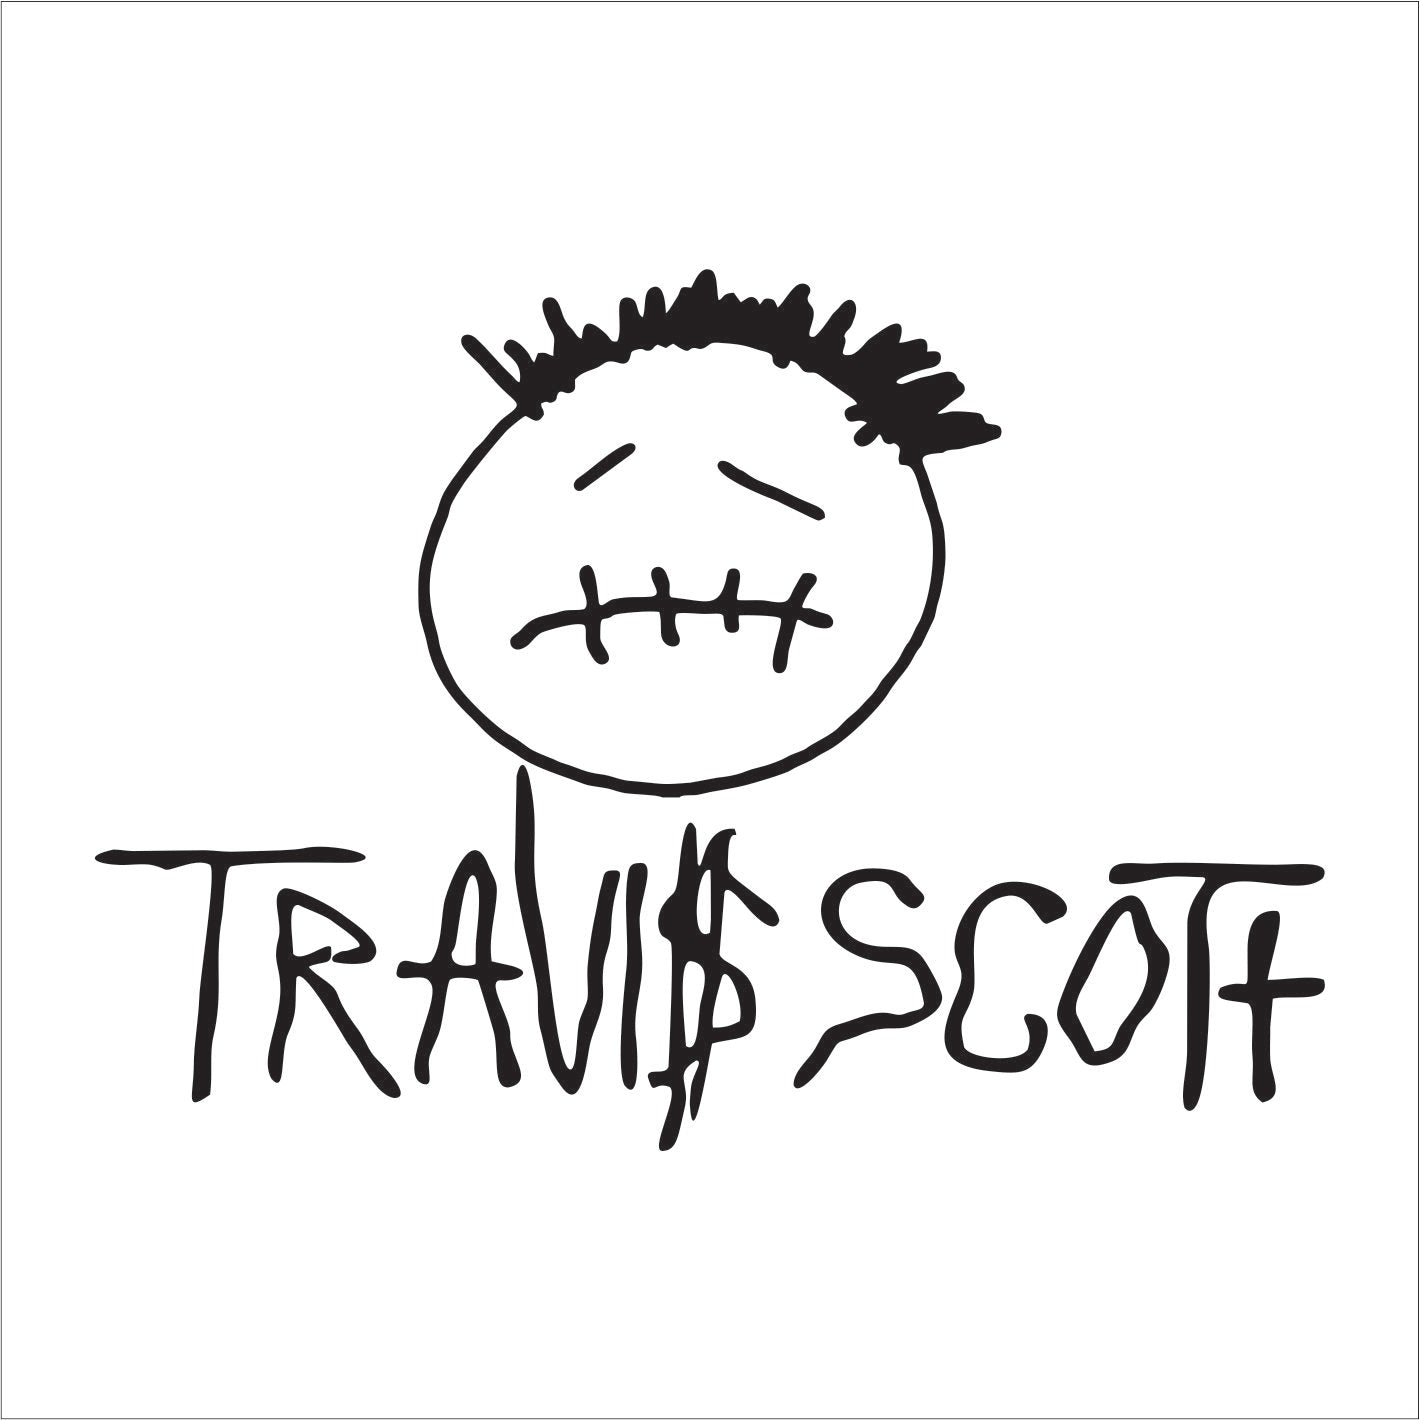 Travis Scott Hat